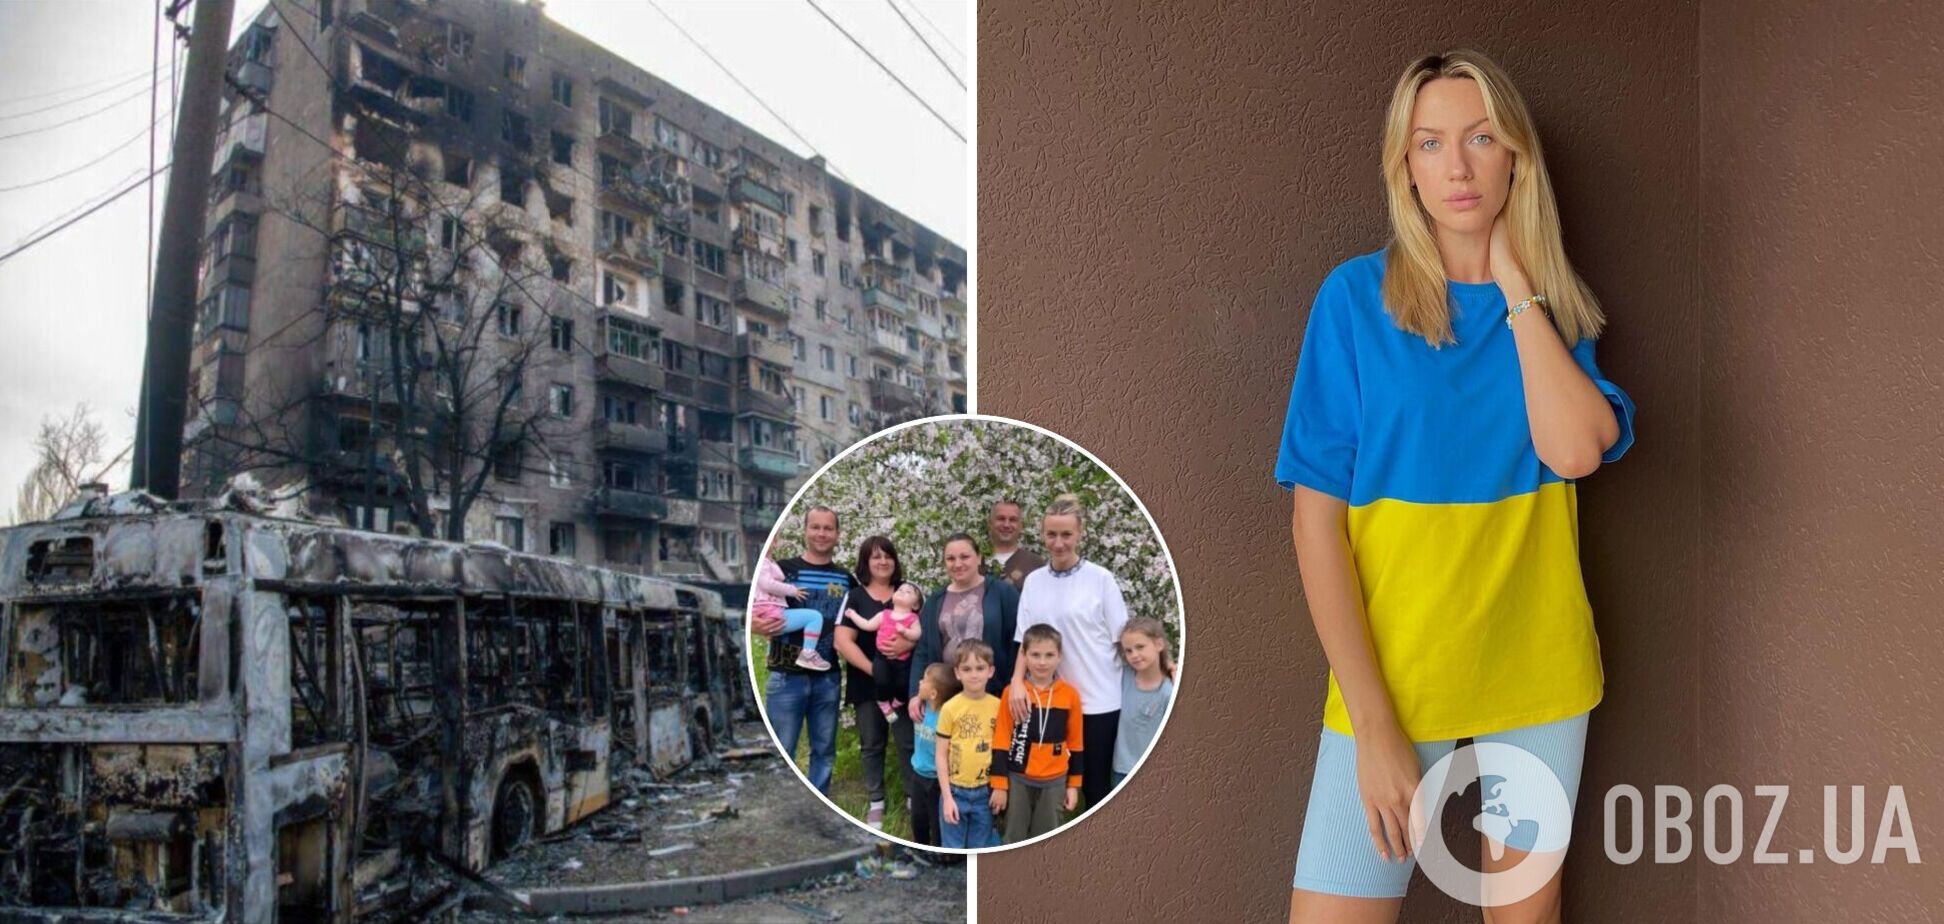 'Вы что, с ума сошли?' Леся Никитюк рассказала, как ее поразила семья из Мариуполя, сбежавшая от 'русского мира'